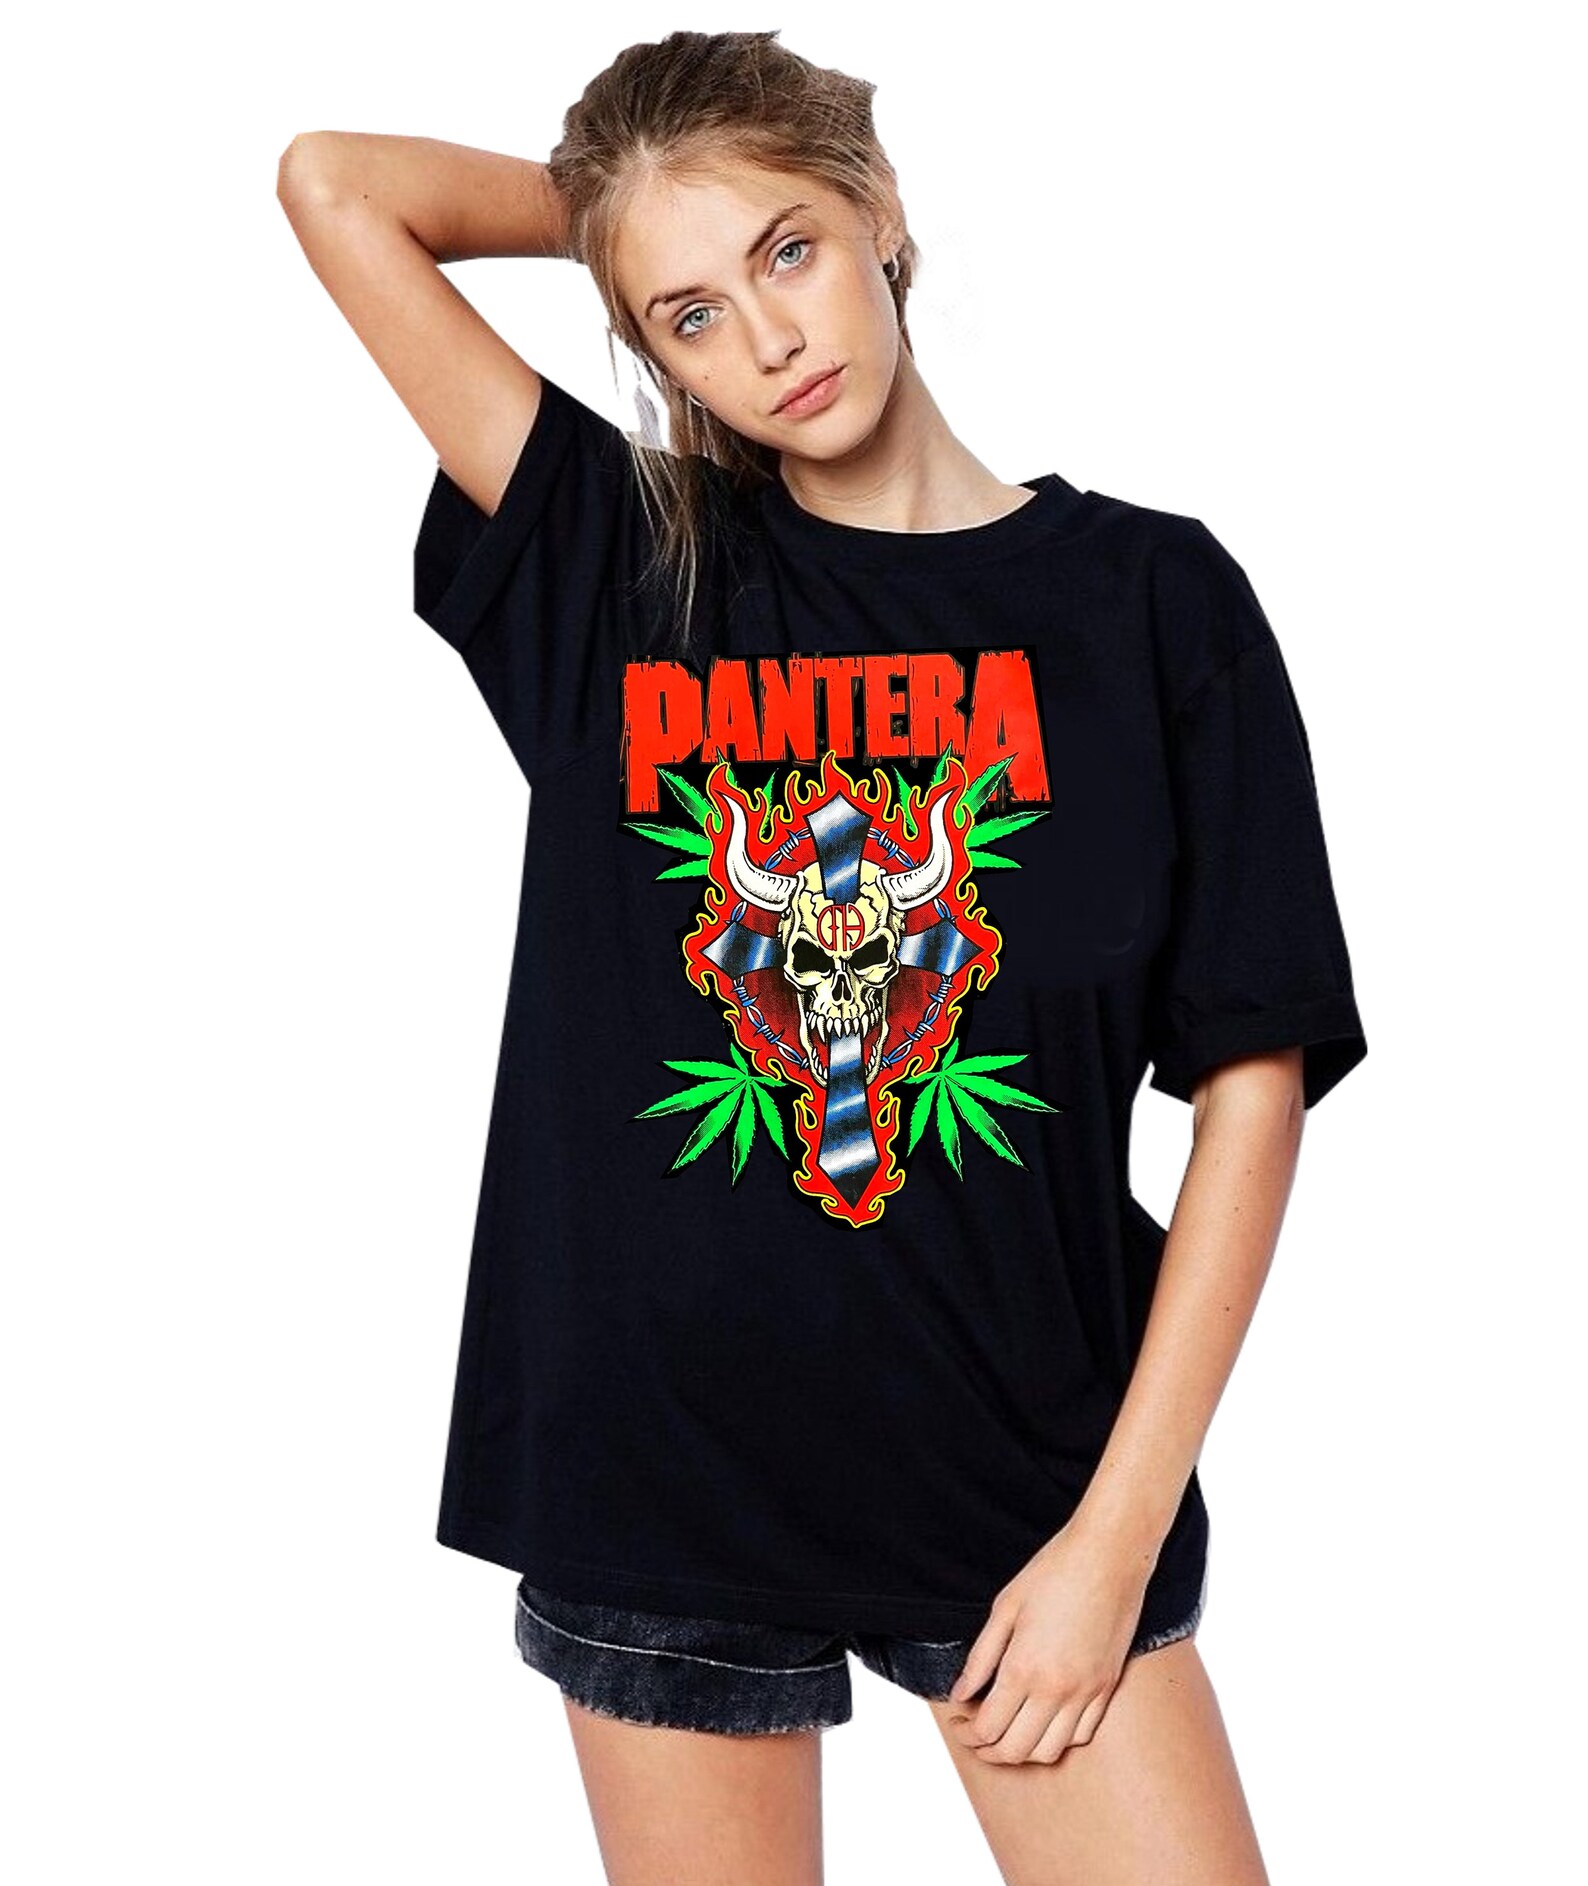 Pantera T Shirt Vintage 90s Pantera Shirt Pantera Band Etsy